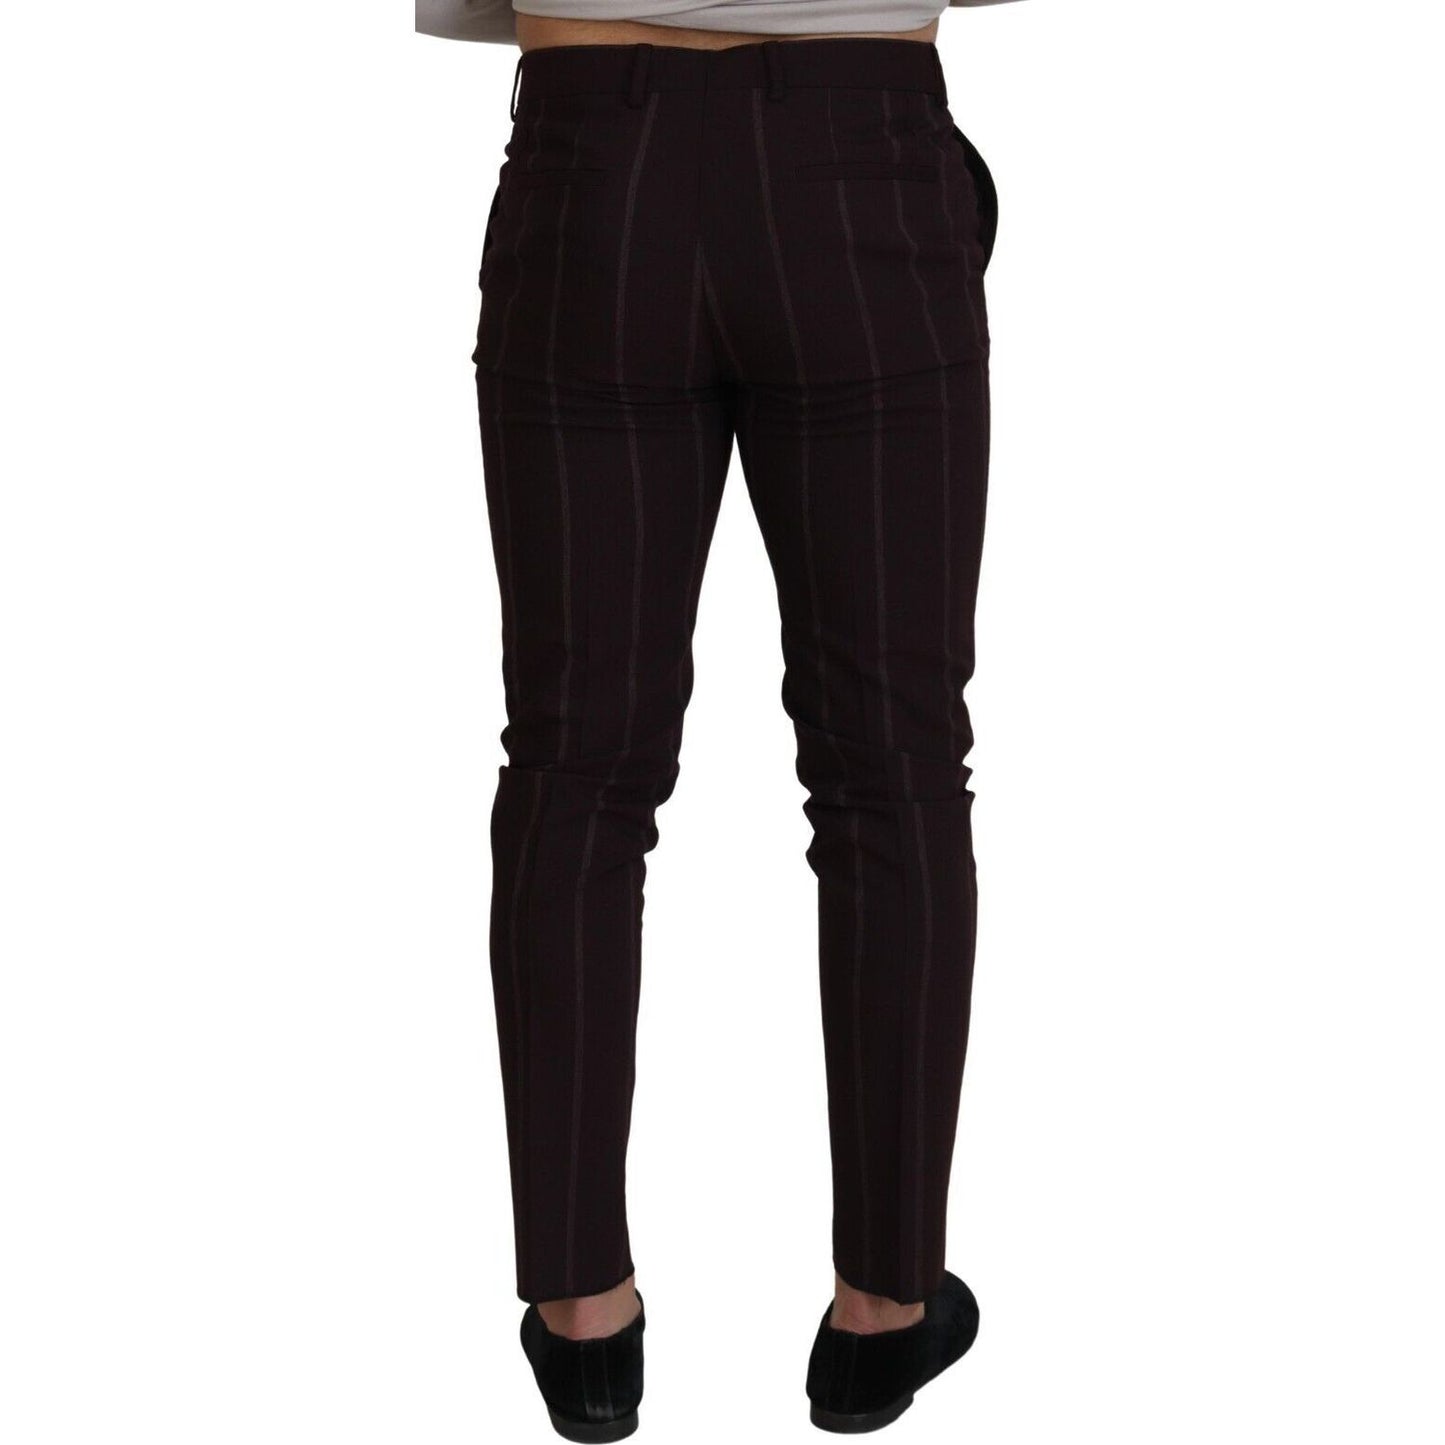 Dolce & Gabbana Elegant Brown Wool Blend Trousers brown-striped-men-trousers-cotton-pants